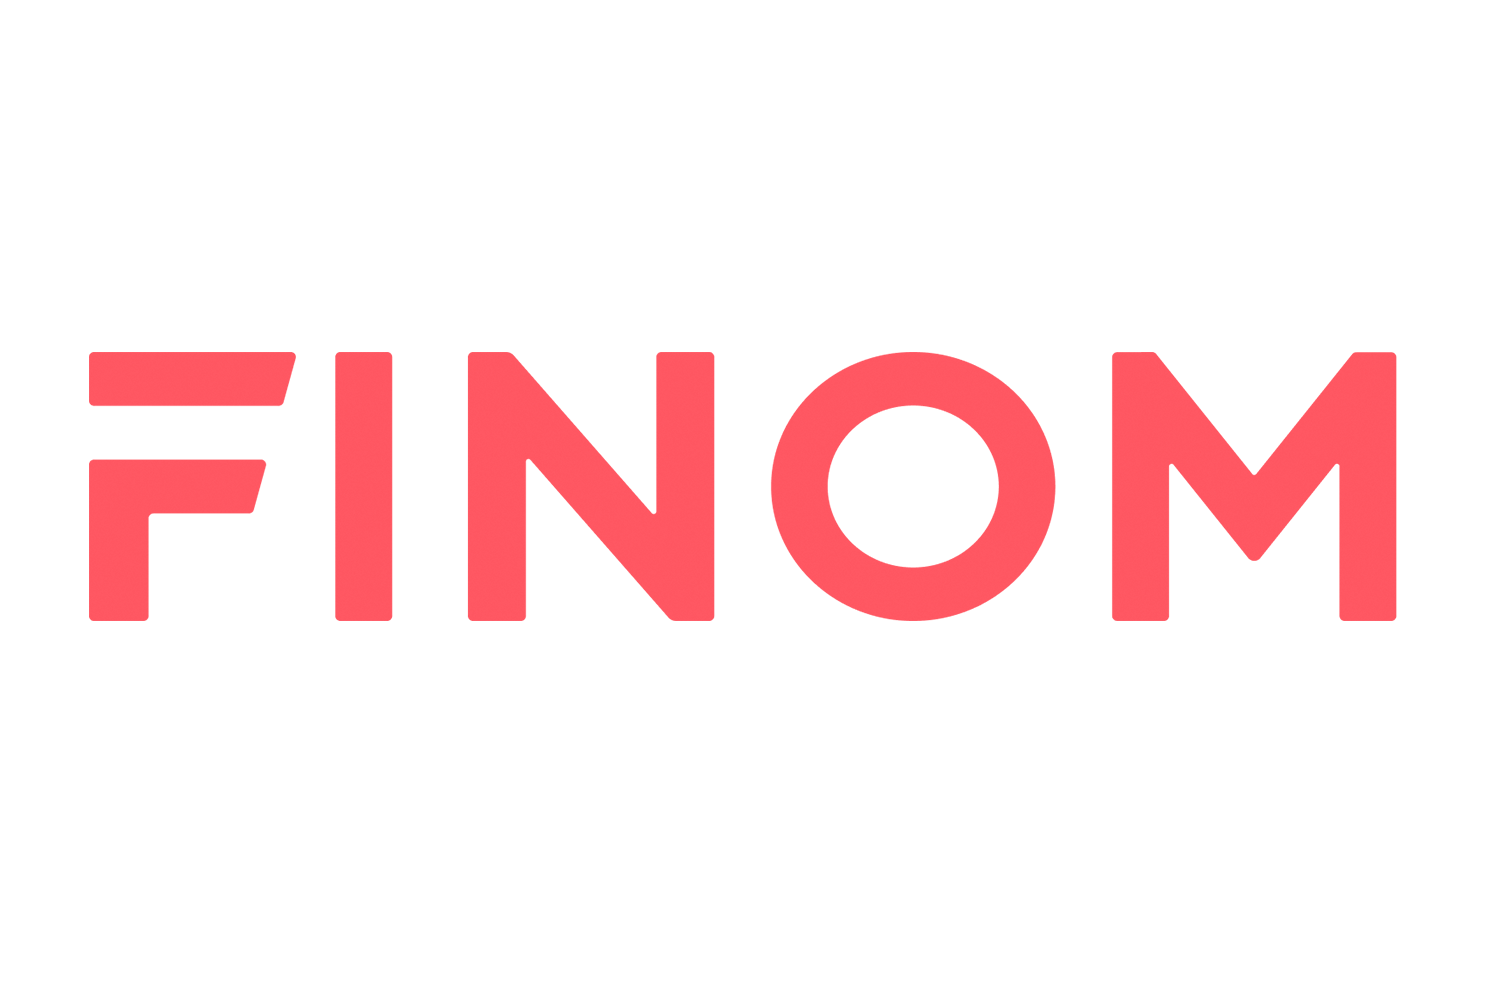 Finom Logo